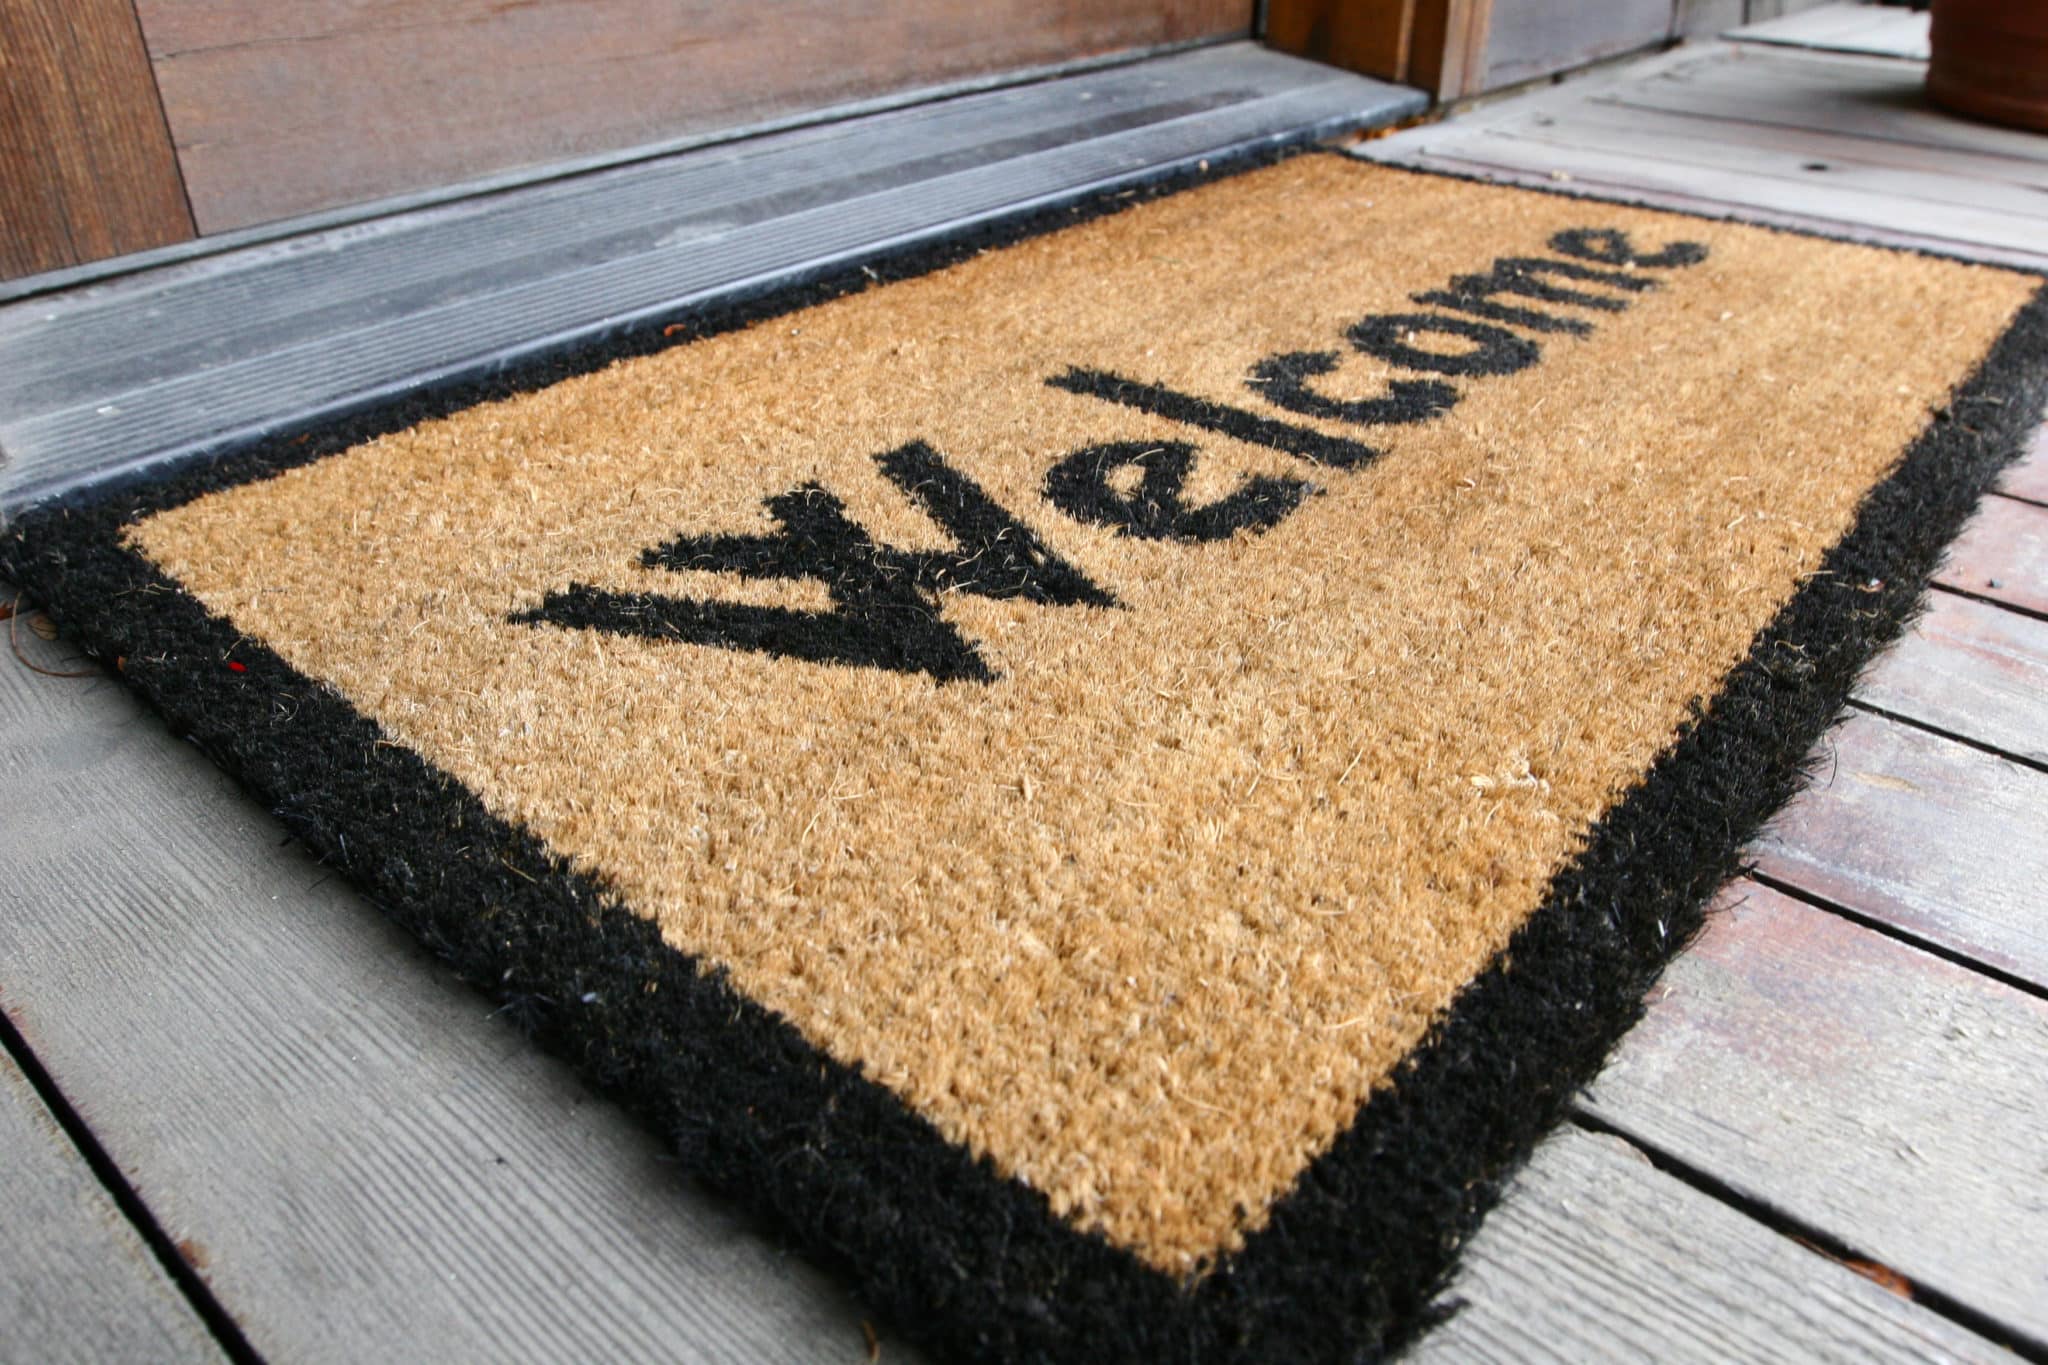 Welcome door mat